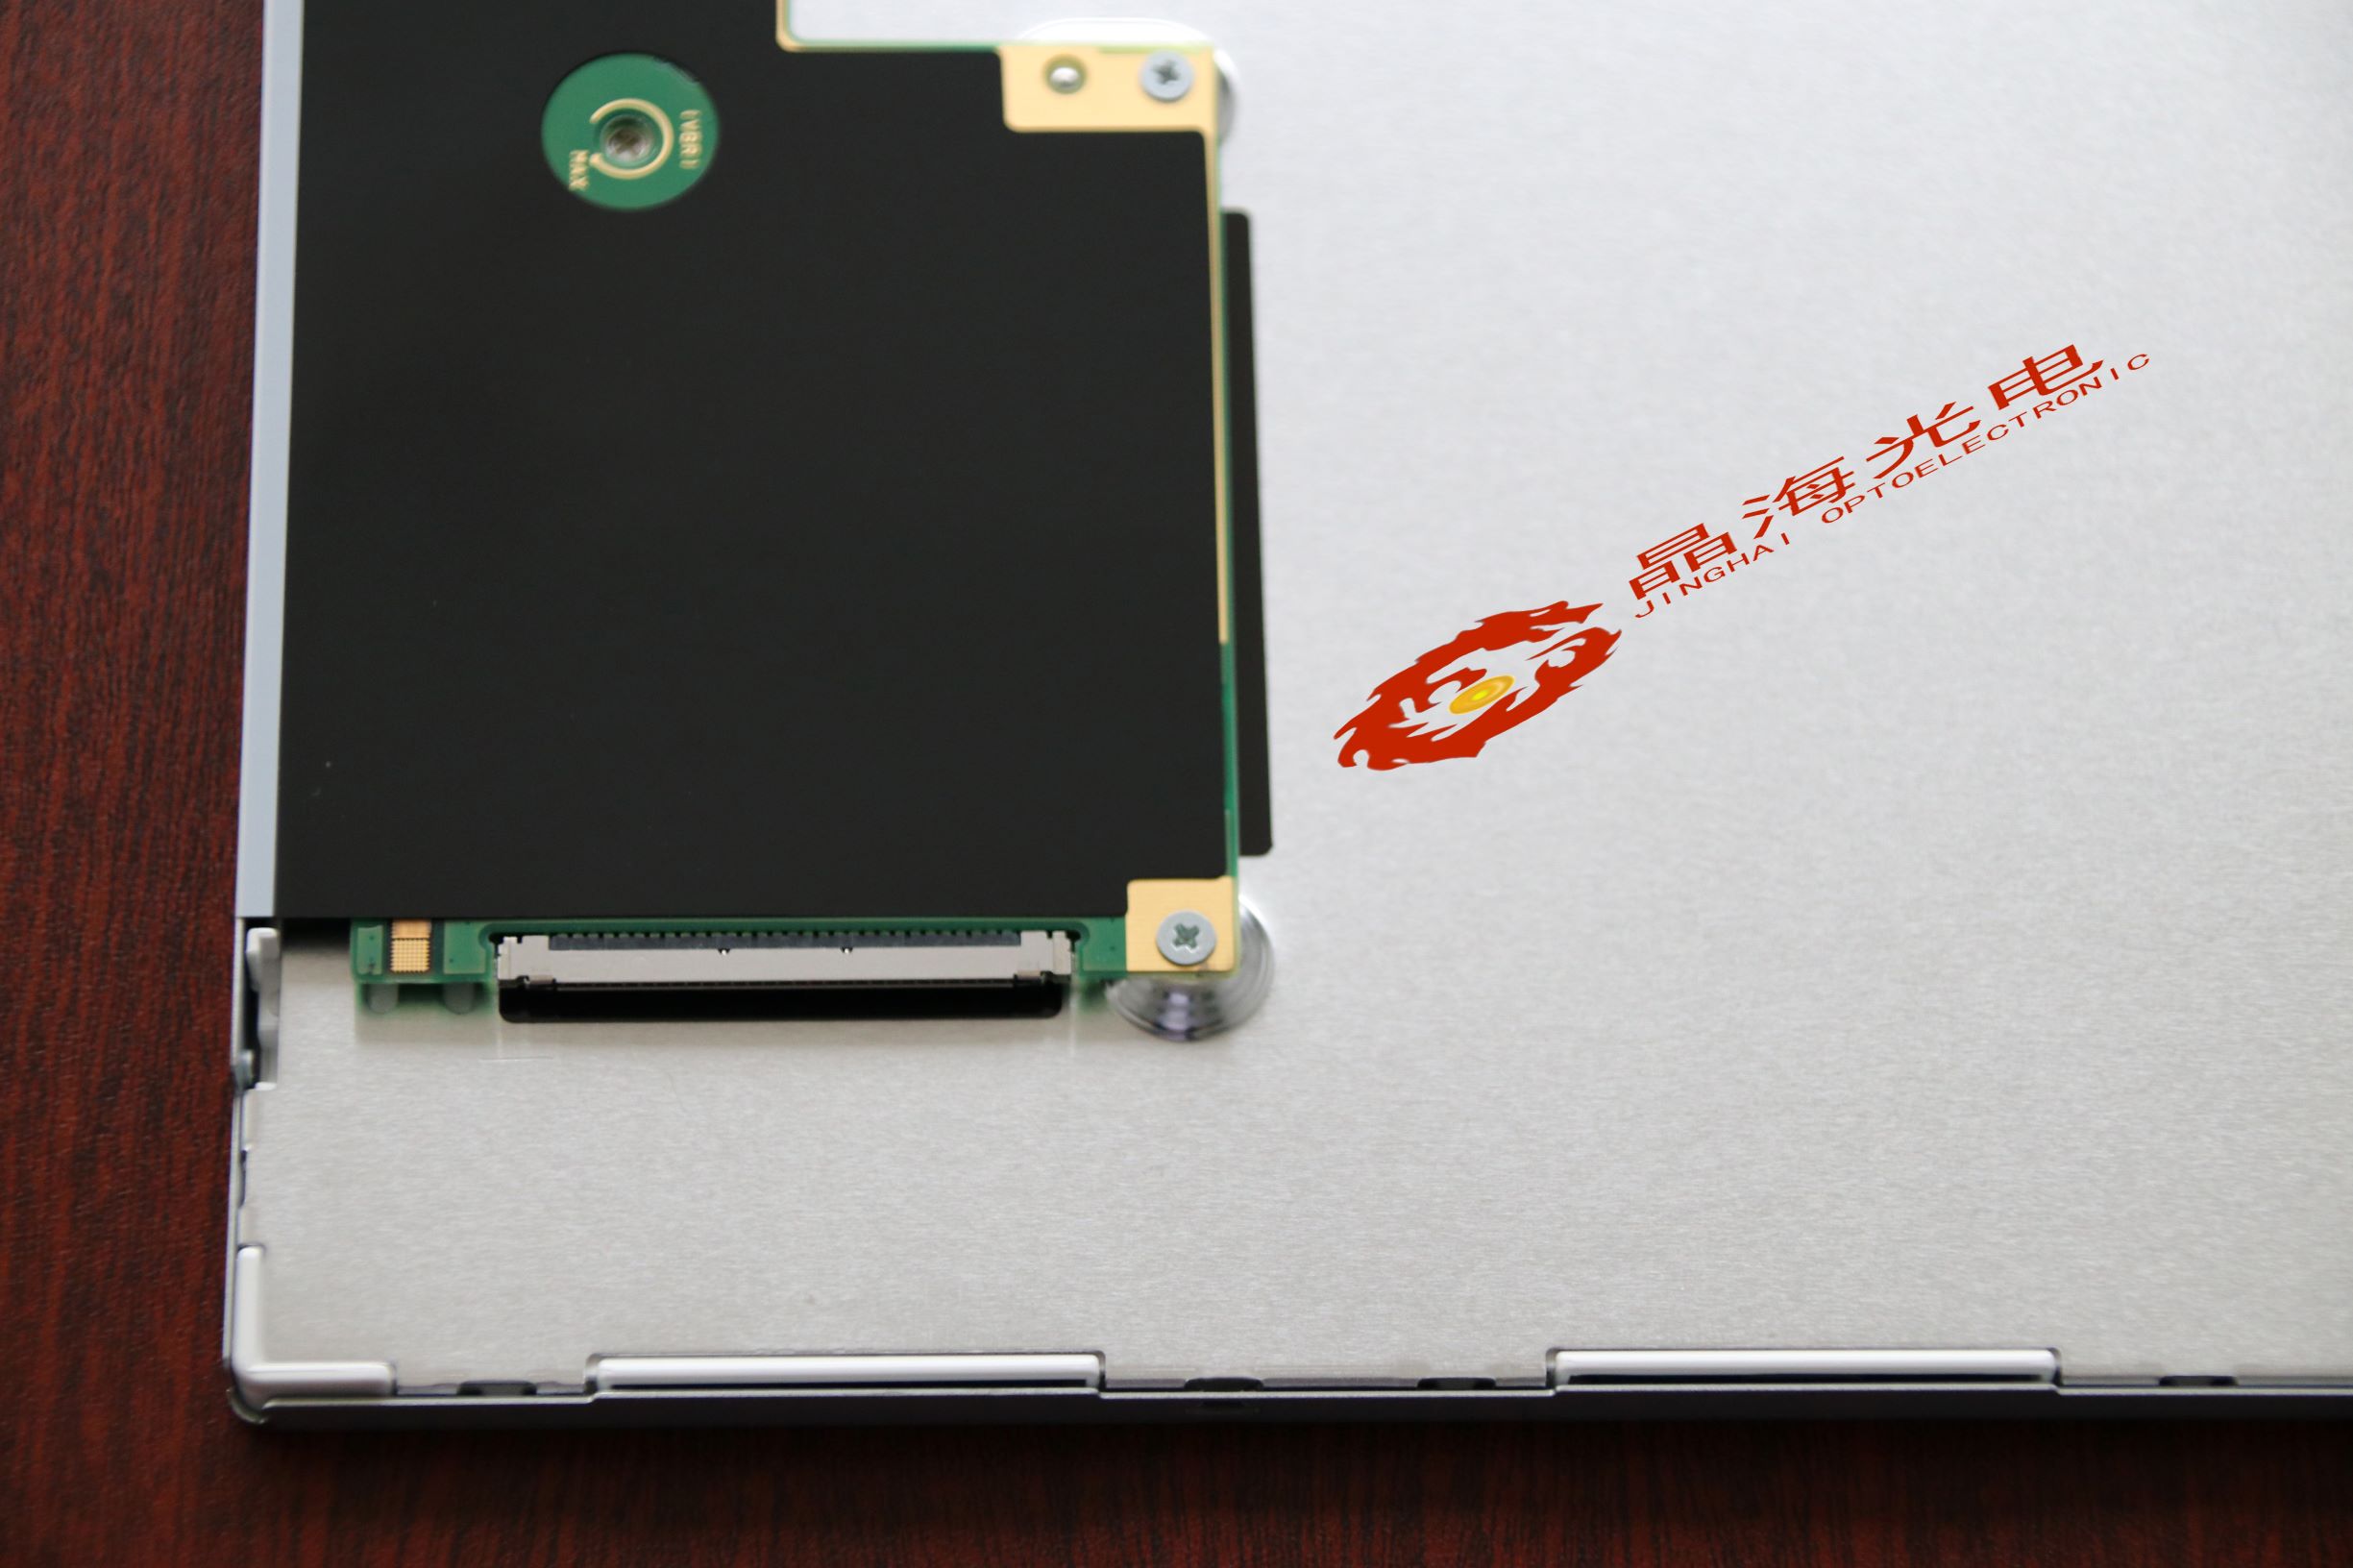 夏普lcd液晶屏-型号LQ121S1LG74-产品应用于游戏机行业